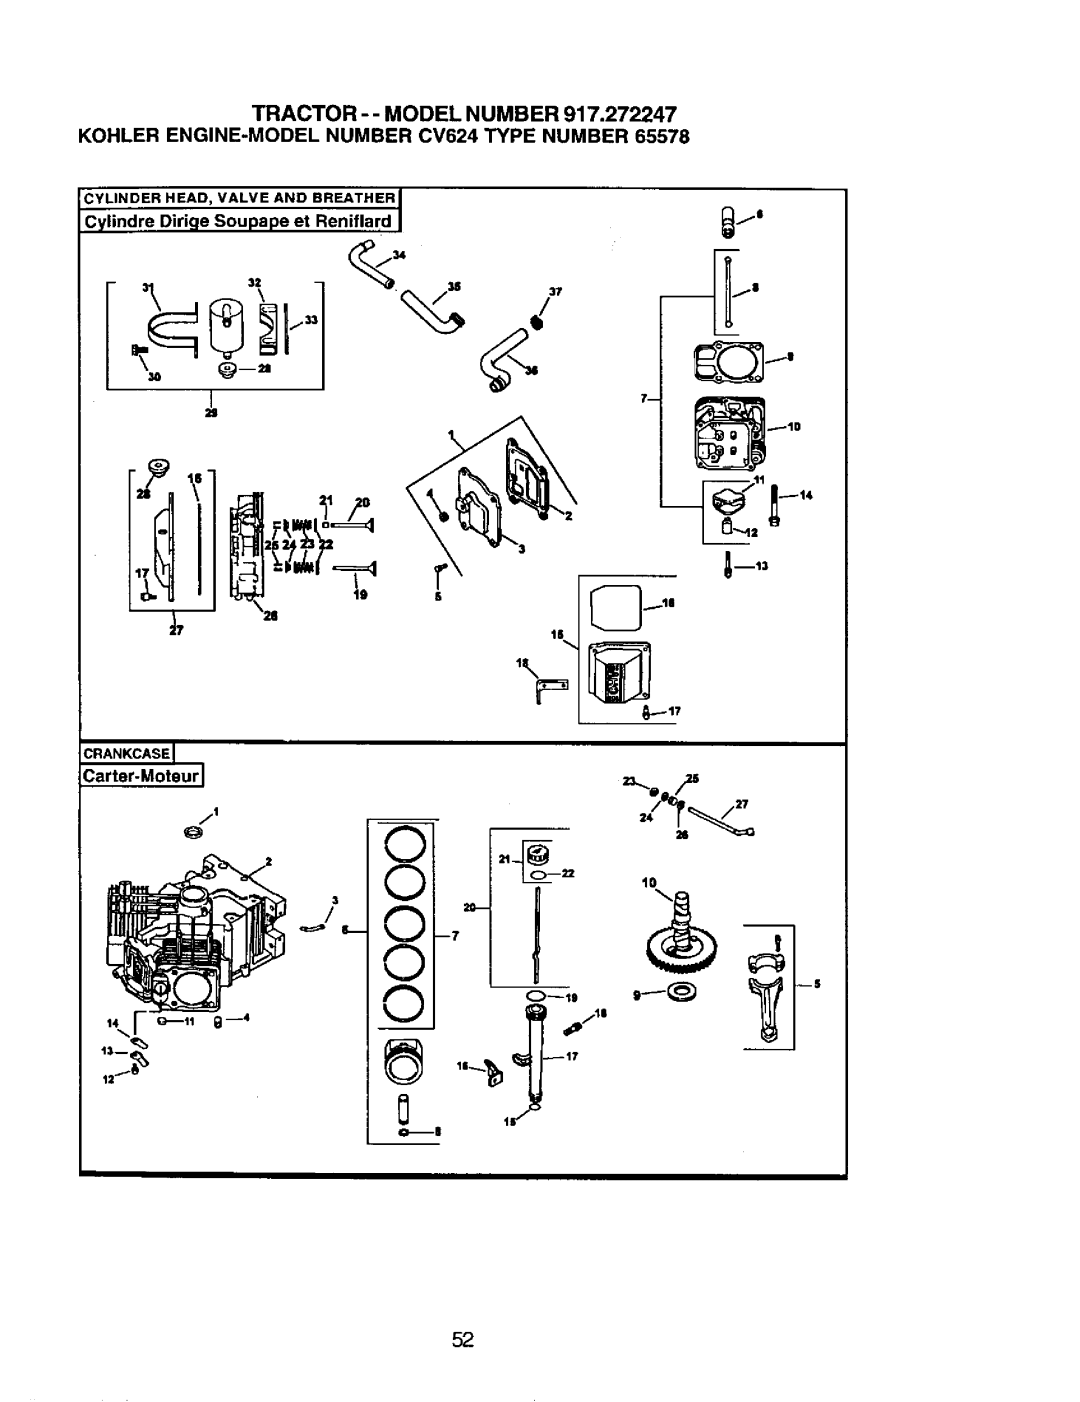 Craftsman 917.272247 c l, Tractor - - Model Number, KOHLER ENGINE-MODELNUMBER CV624 TYPE NUMBER, _mt3, jl m10, x._l 